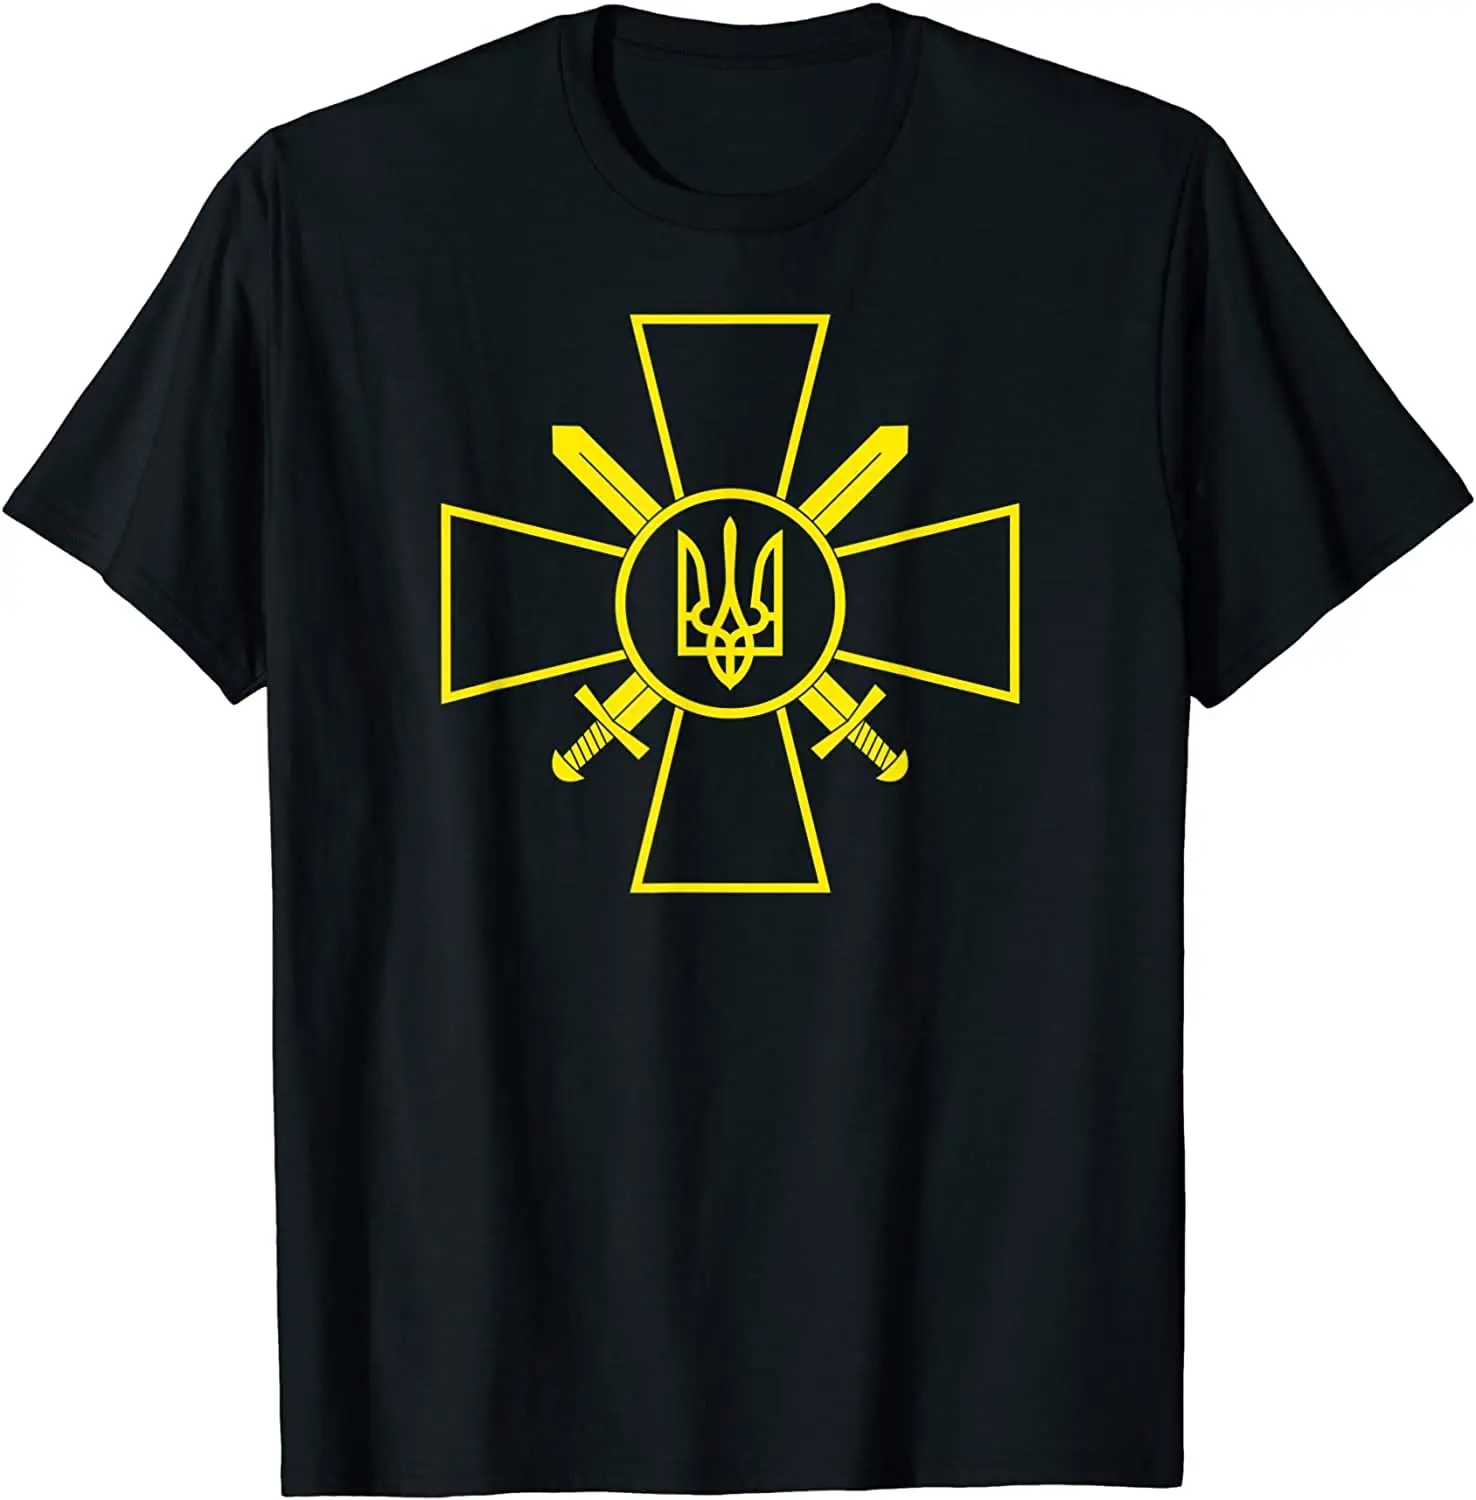 

Ukrainian Ground Forces Emblem Ukraine Army Armed Forces T-Shirt Men's 100% Cotton Casual T-shirts Loose Top Size S-3XL